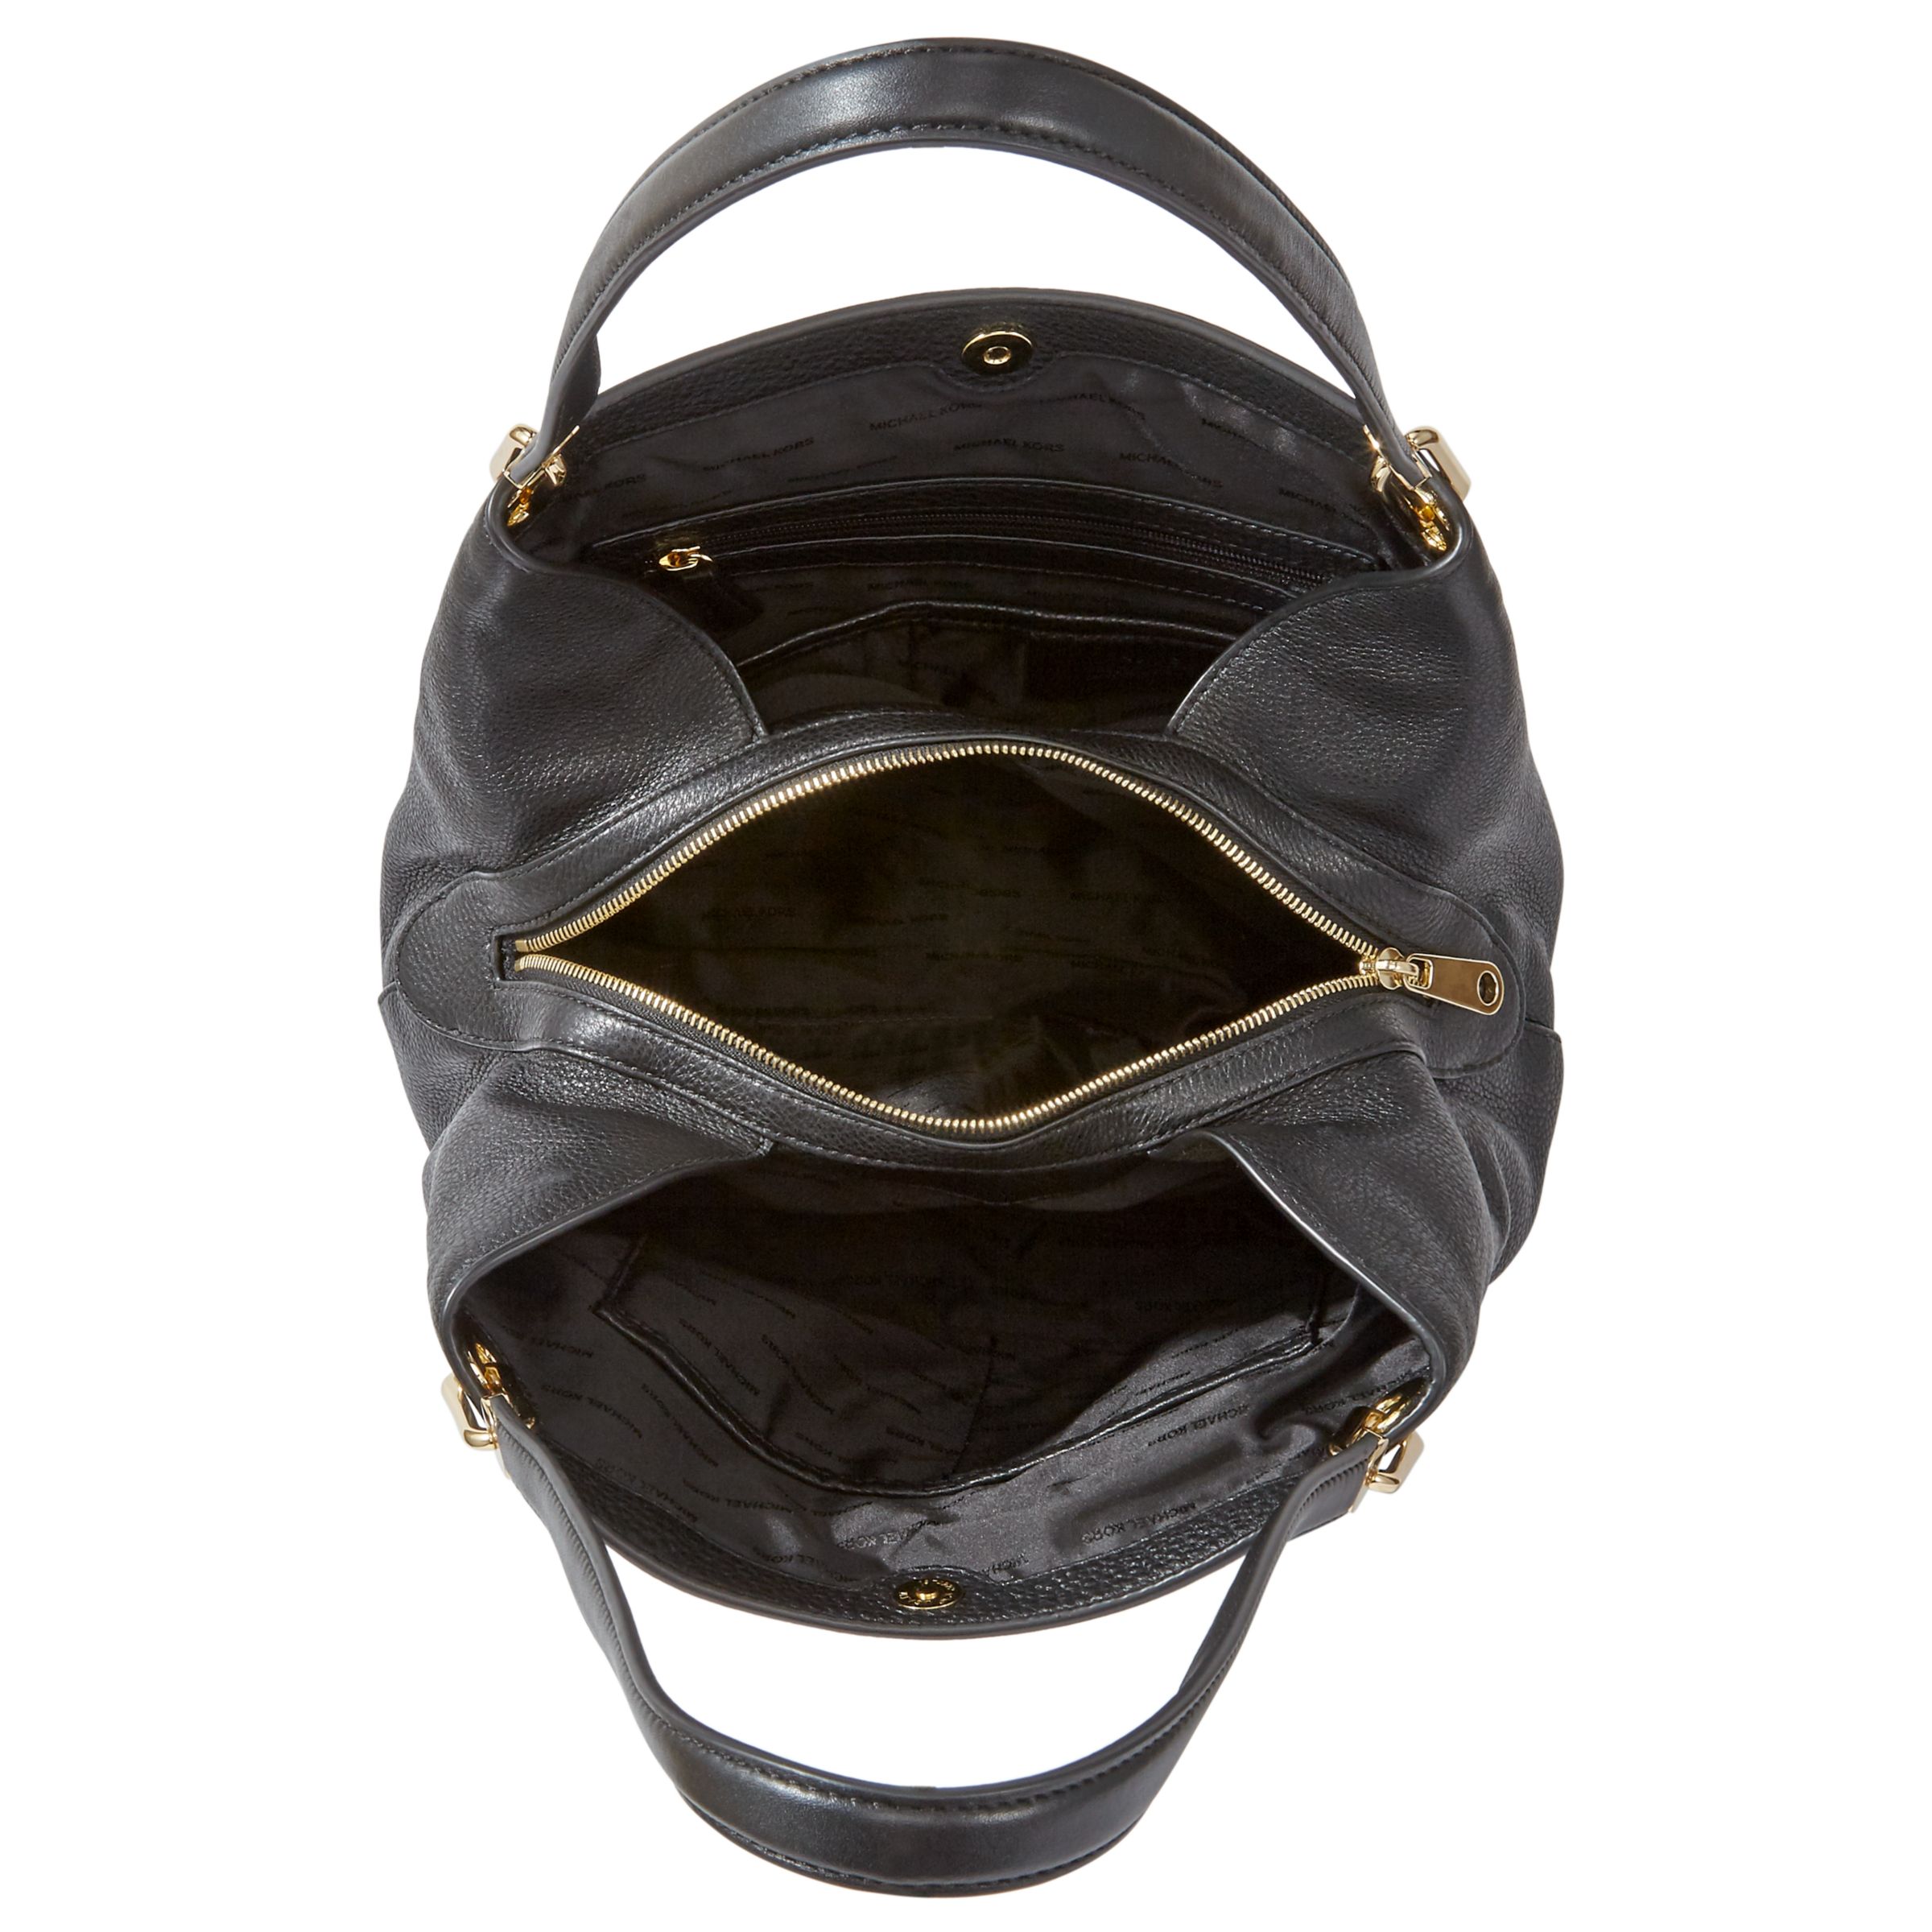 Michael Kors Raven Large Leather Shoulder Bag - Black